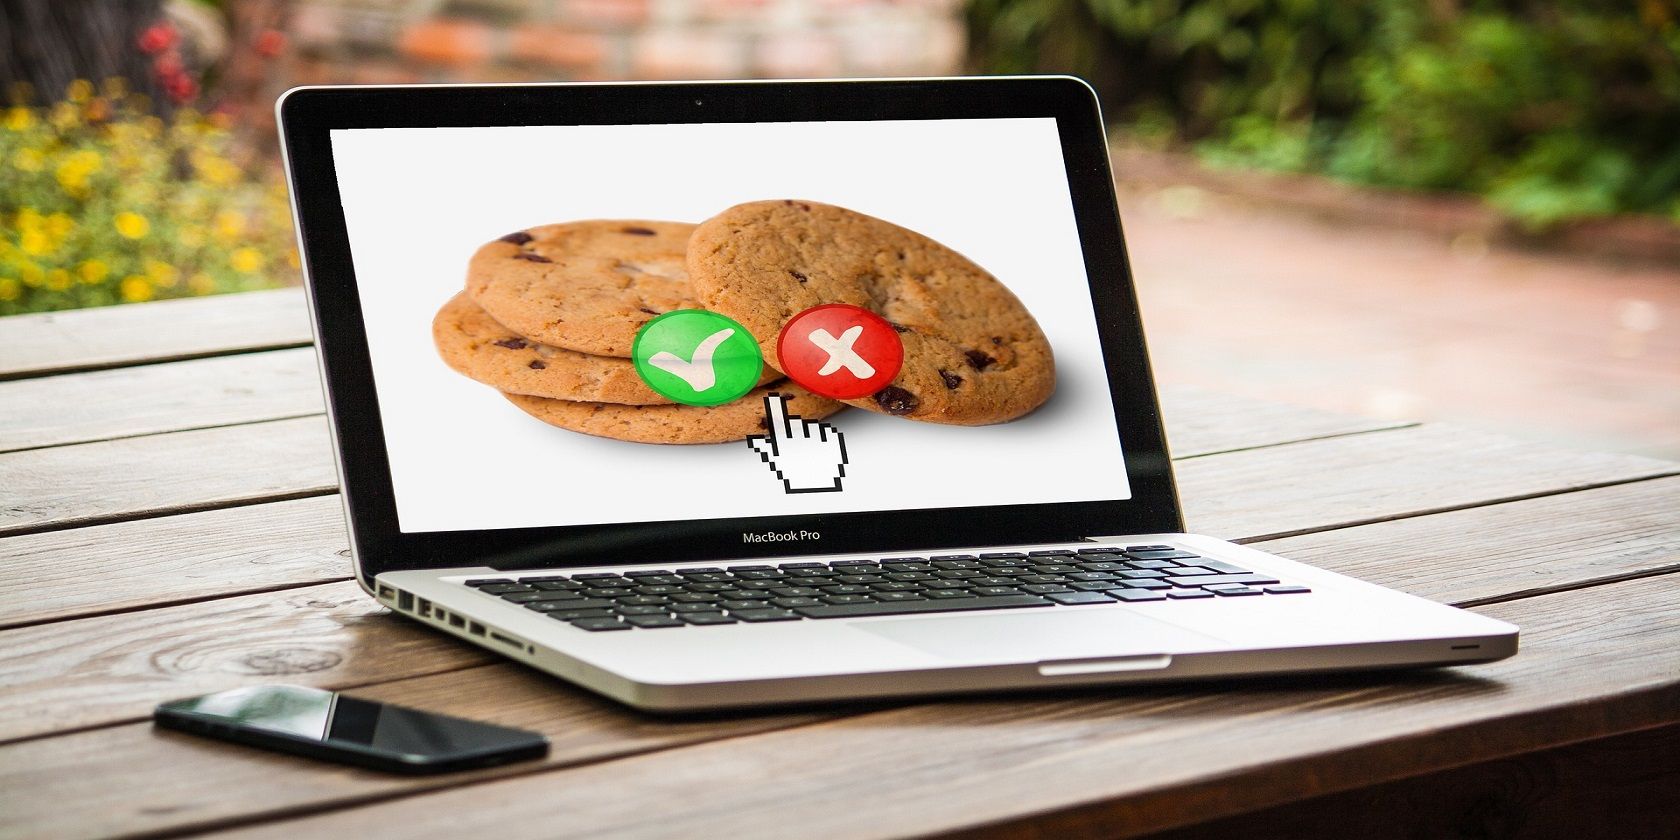 browser cookies - Che cos’è la navigazione privata e come può aiutarti a navigare in sicurezza?